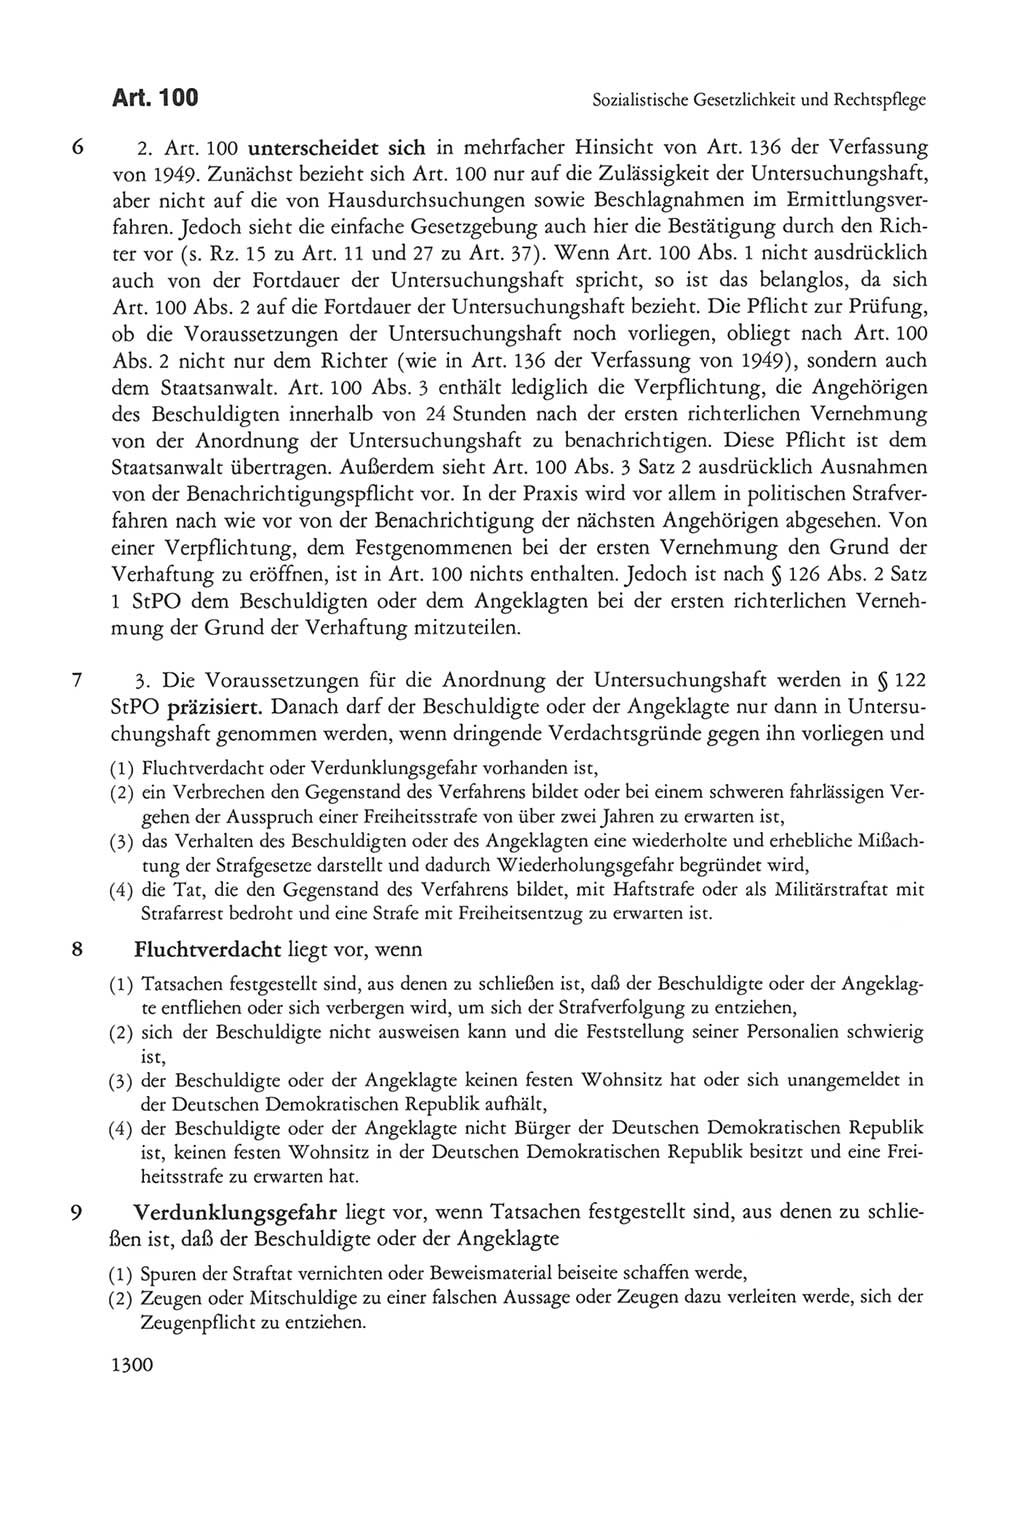 Die sozialistische Verfassung der Deutschen Demokratischen Republik (DDR), Kommentar 1982, Seite 1300 (Soz. Verf. DDR Komm. 1982, S. 1300)